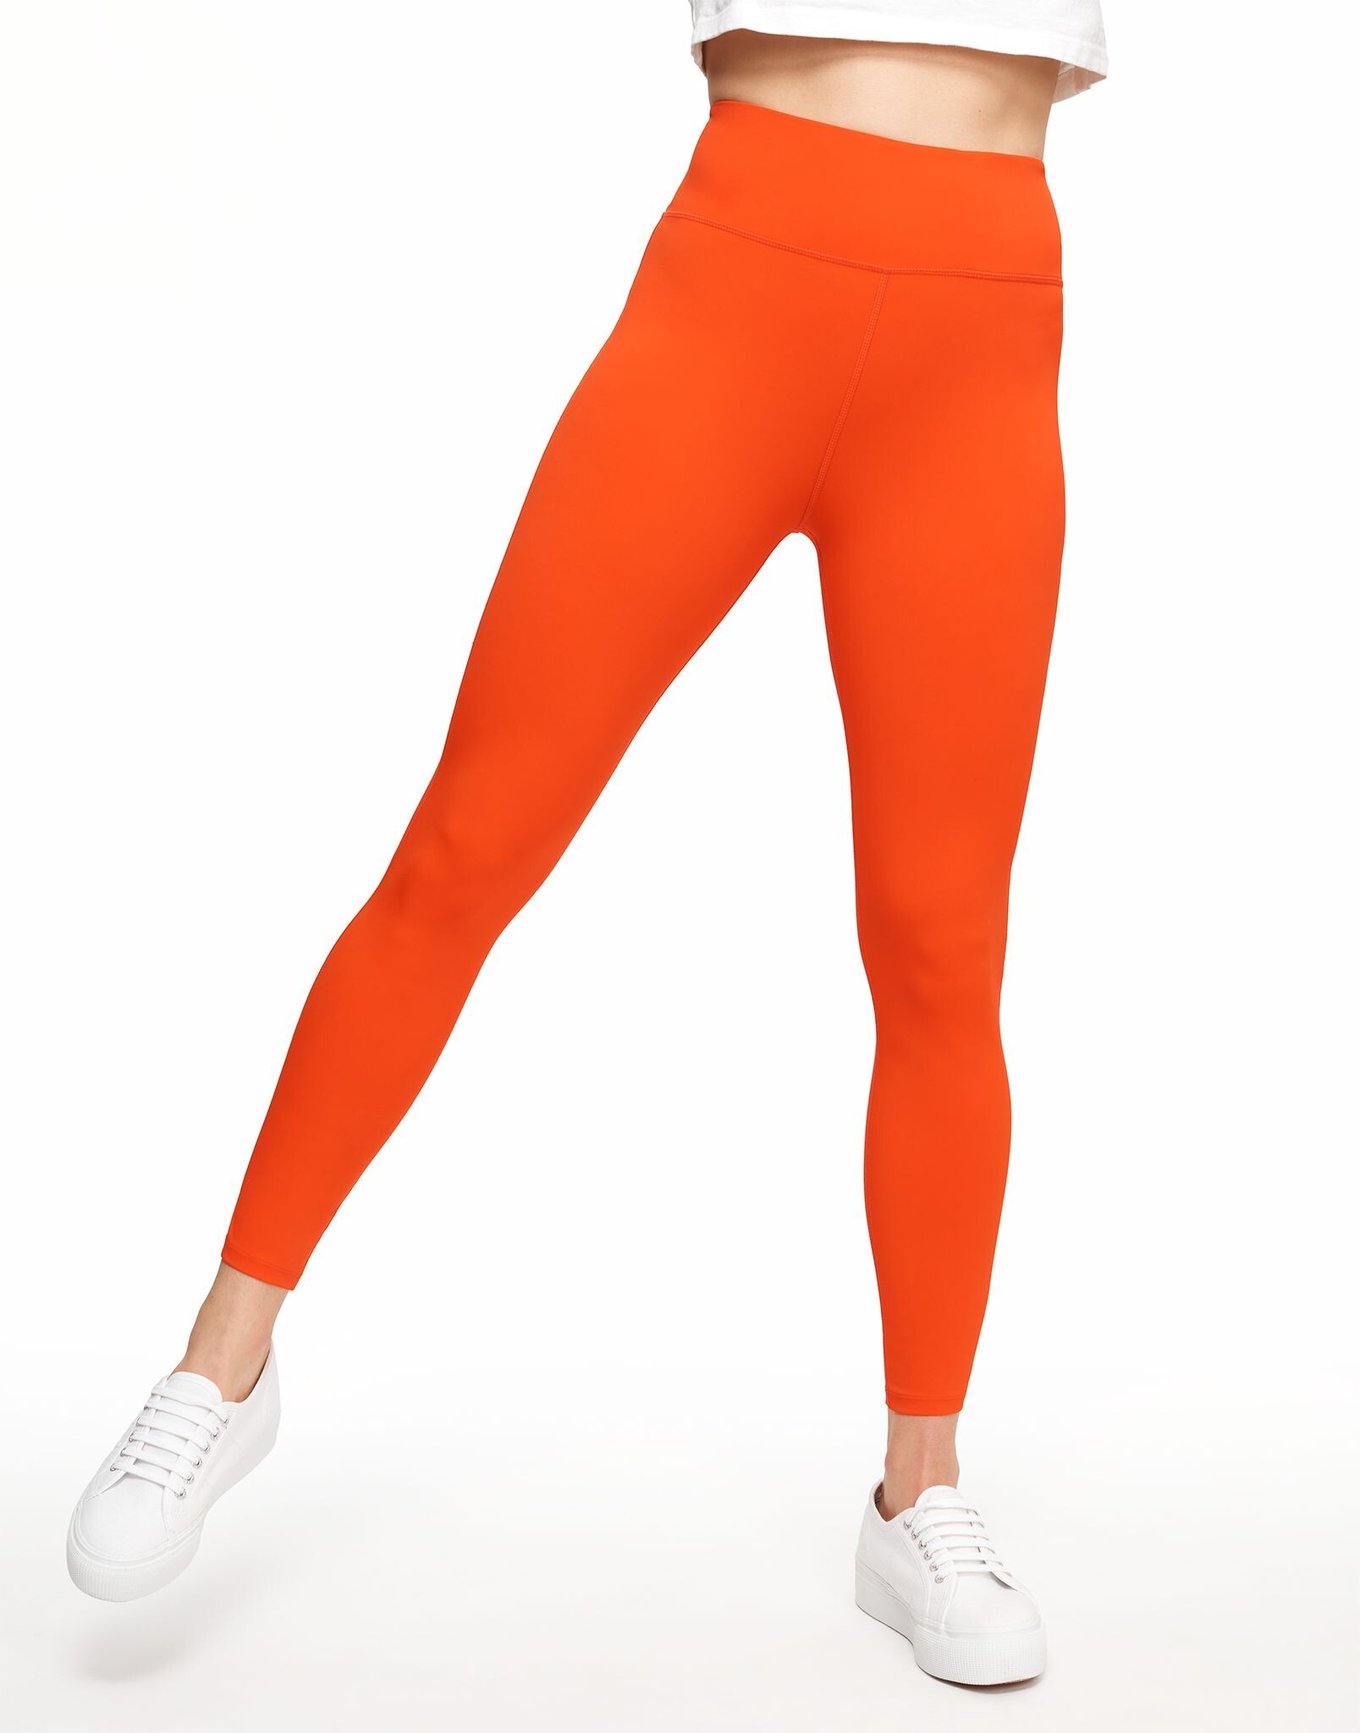 Orange leggings Free Stock Photos, Images, and Pictures of Orange leggings